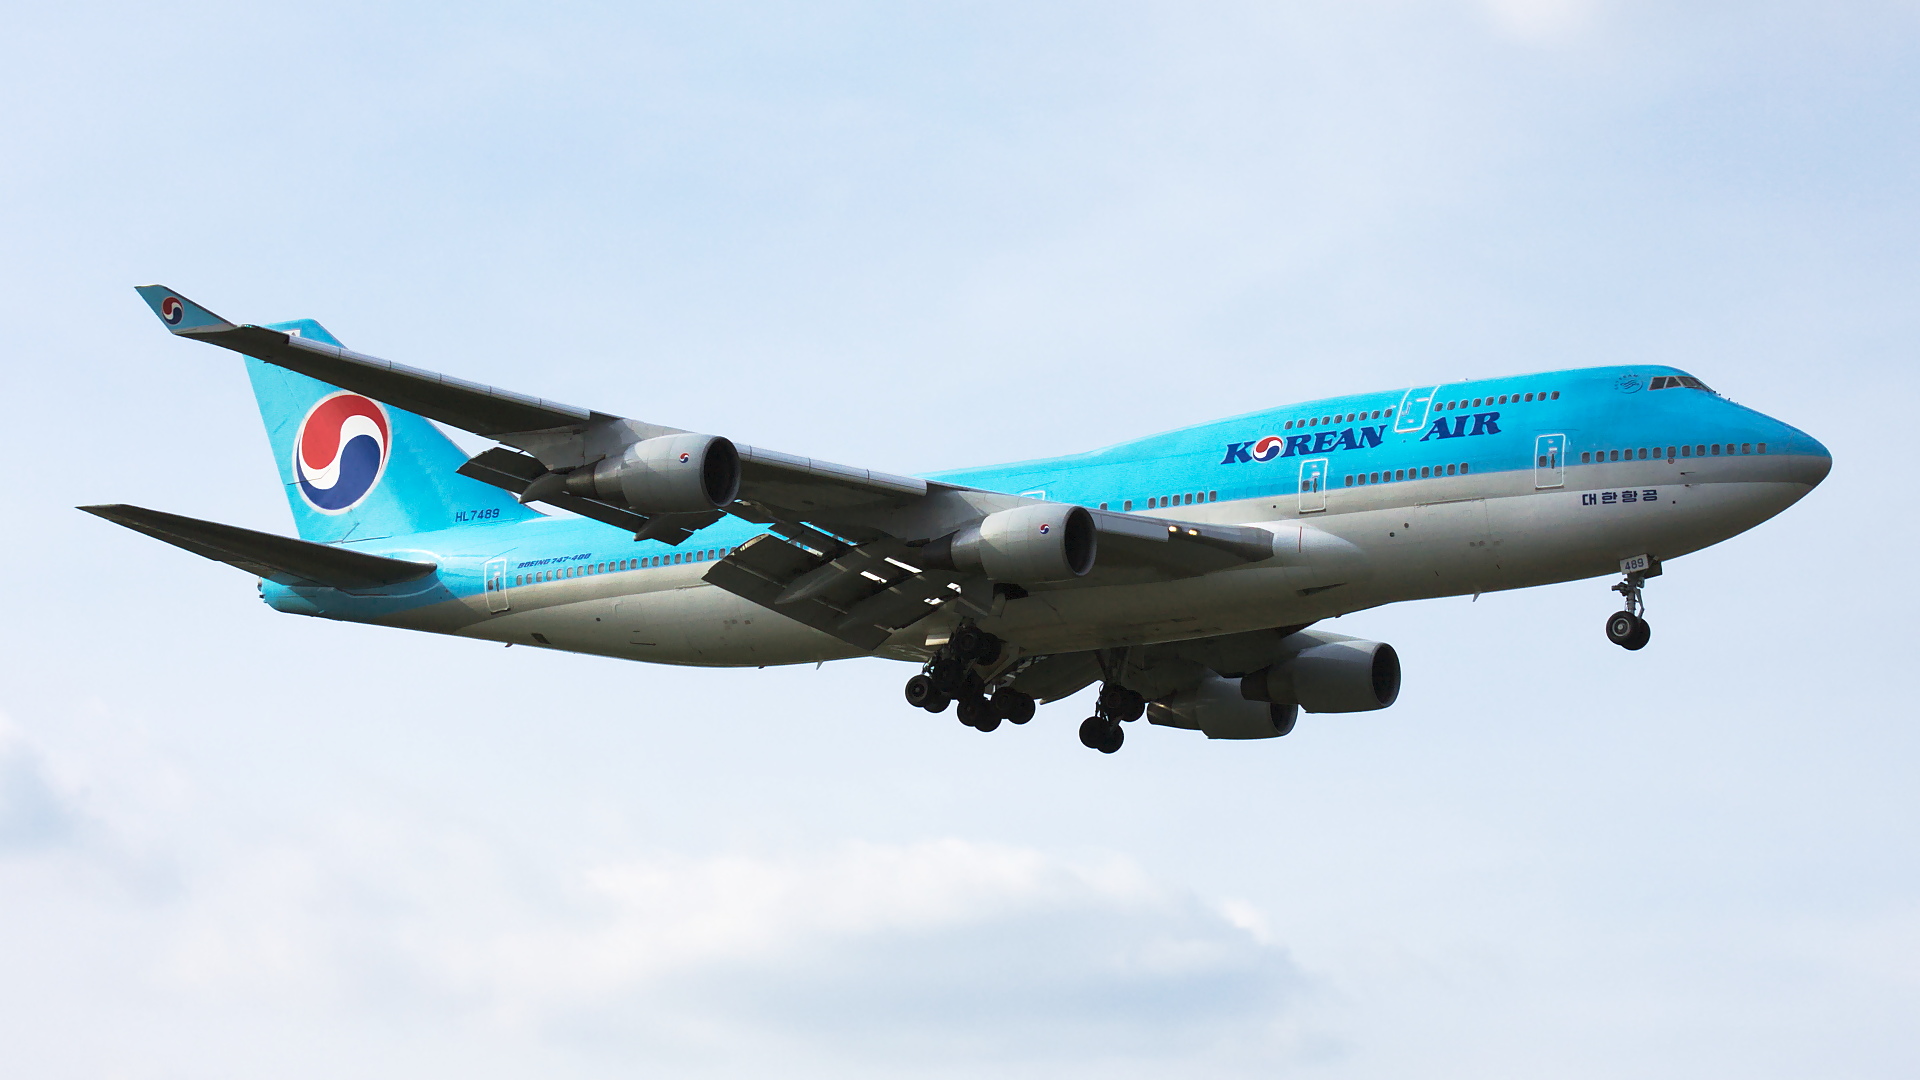 HL7489 ✈ Korean Air Boeing 747-4B5 @ London-Heathrow